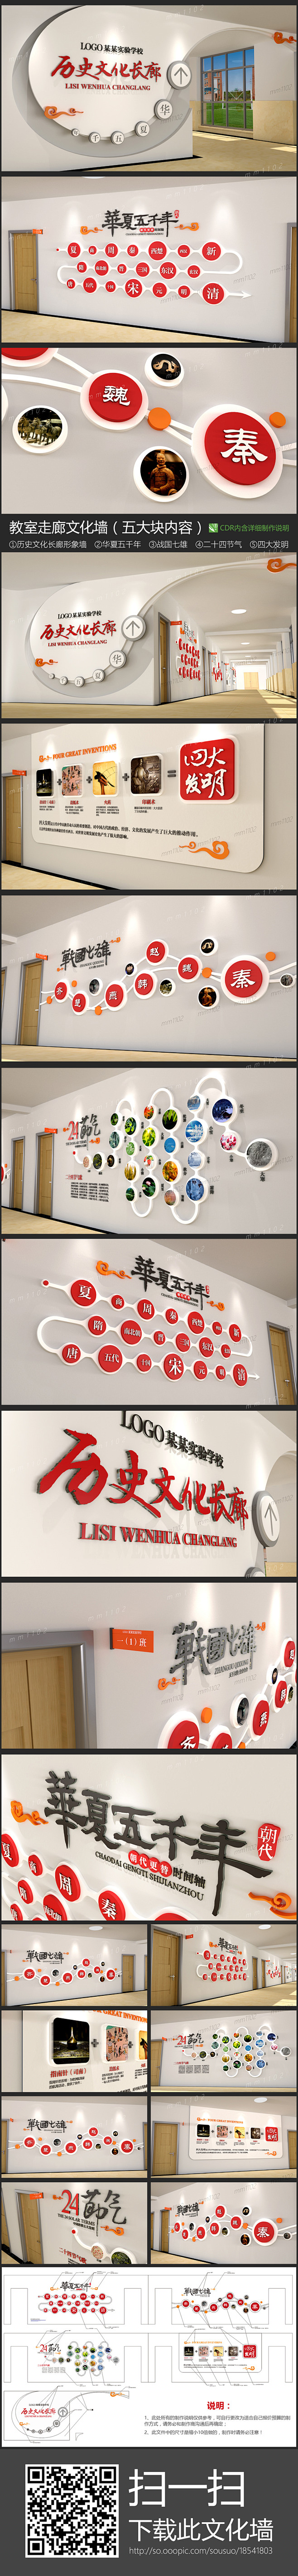 学校园教室走廊文化墙矢量CDR模板效果图...